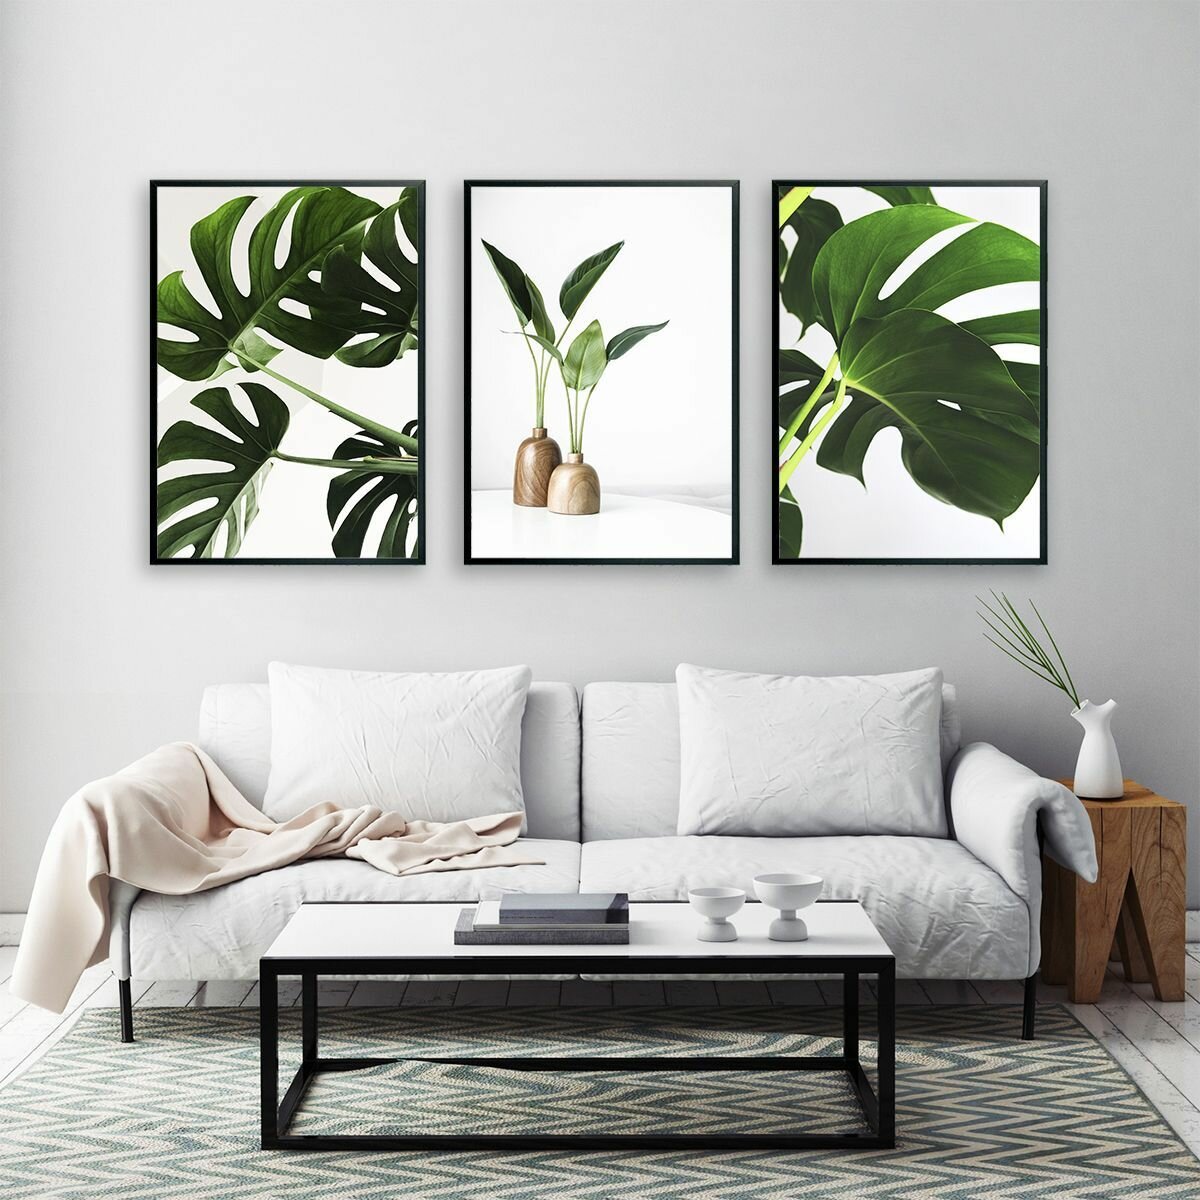 Постеры для интерьера "Зеленые листья природы", постеры на стену 50х70 см, 3 шт.